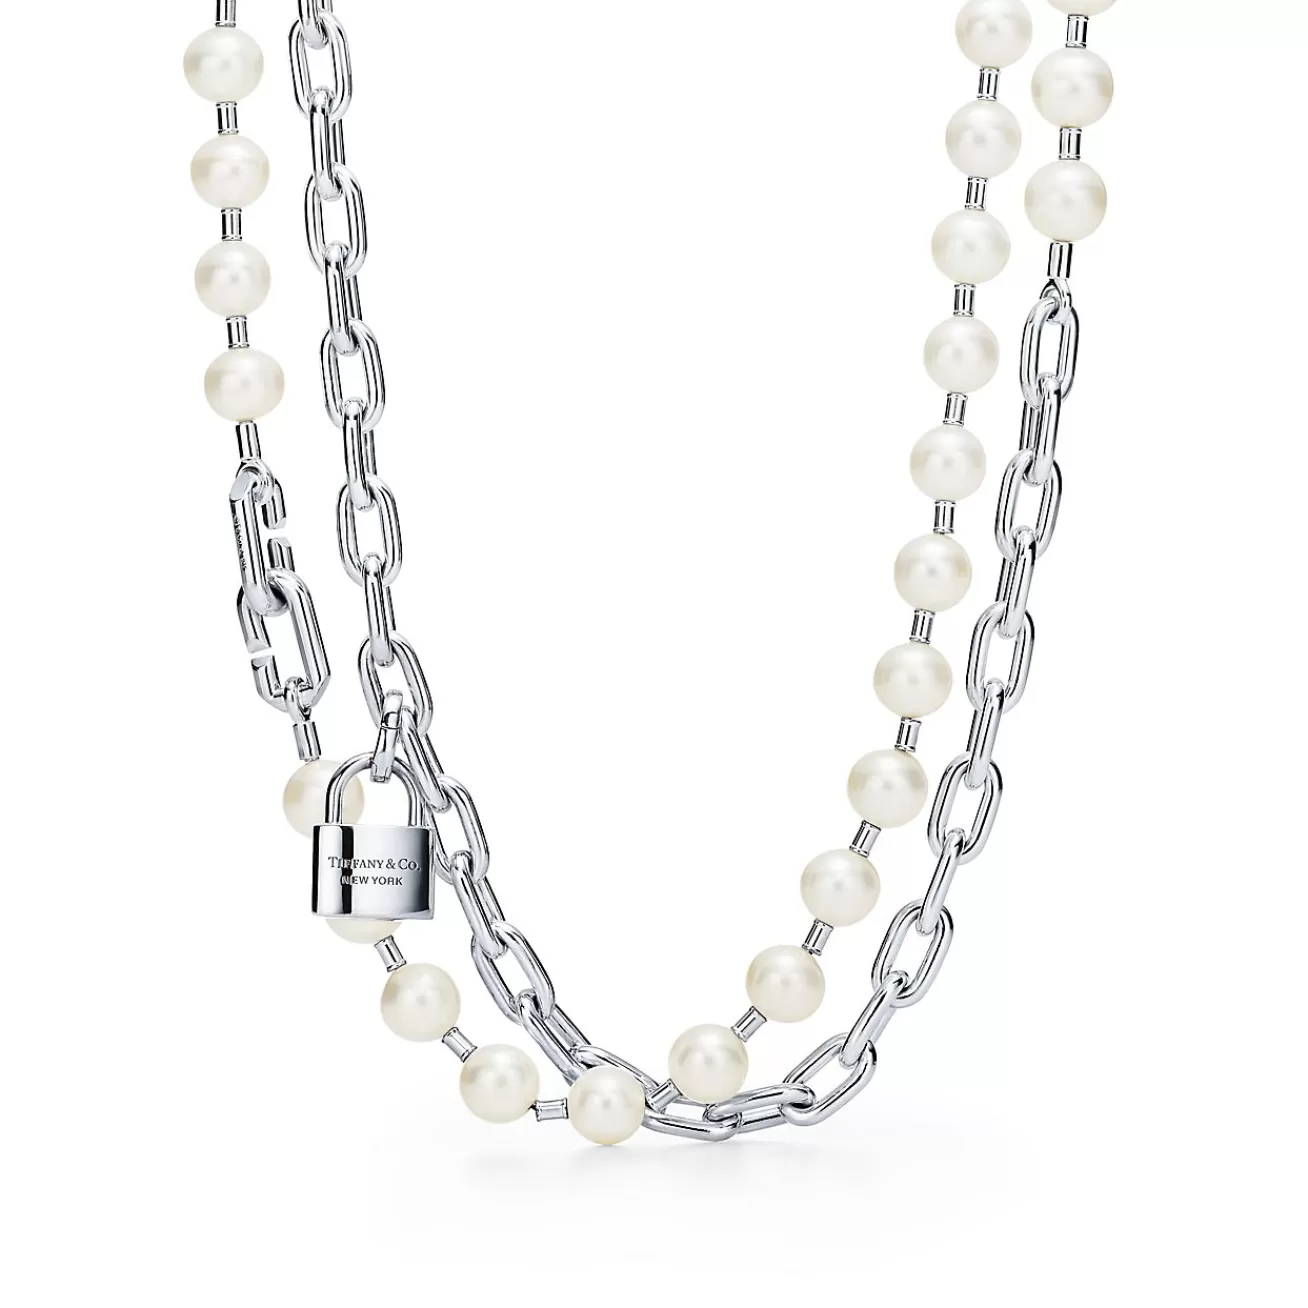 Tiffany & Co. Tiffany HardWear Pearl Lock Necklace in Silver, 9-10 mm | ^ Necklaces & Pendants | Men's Jewelry